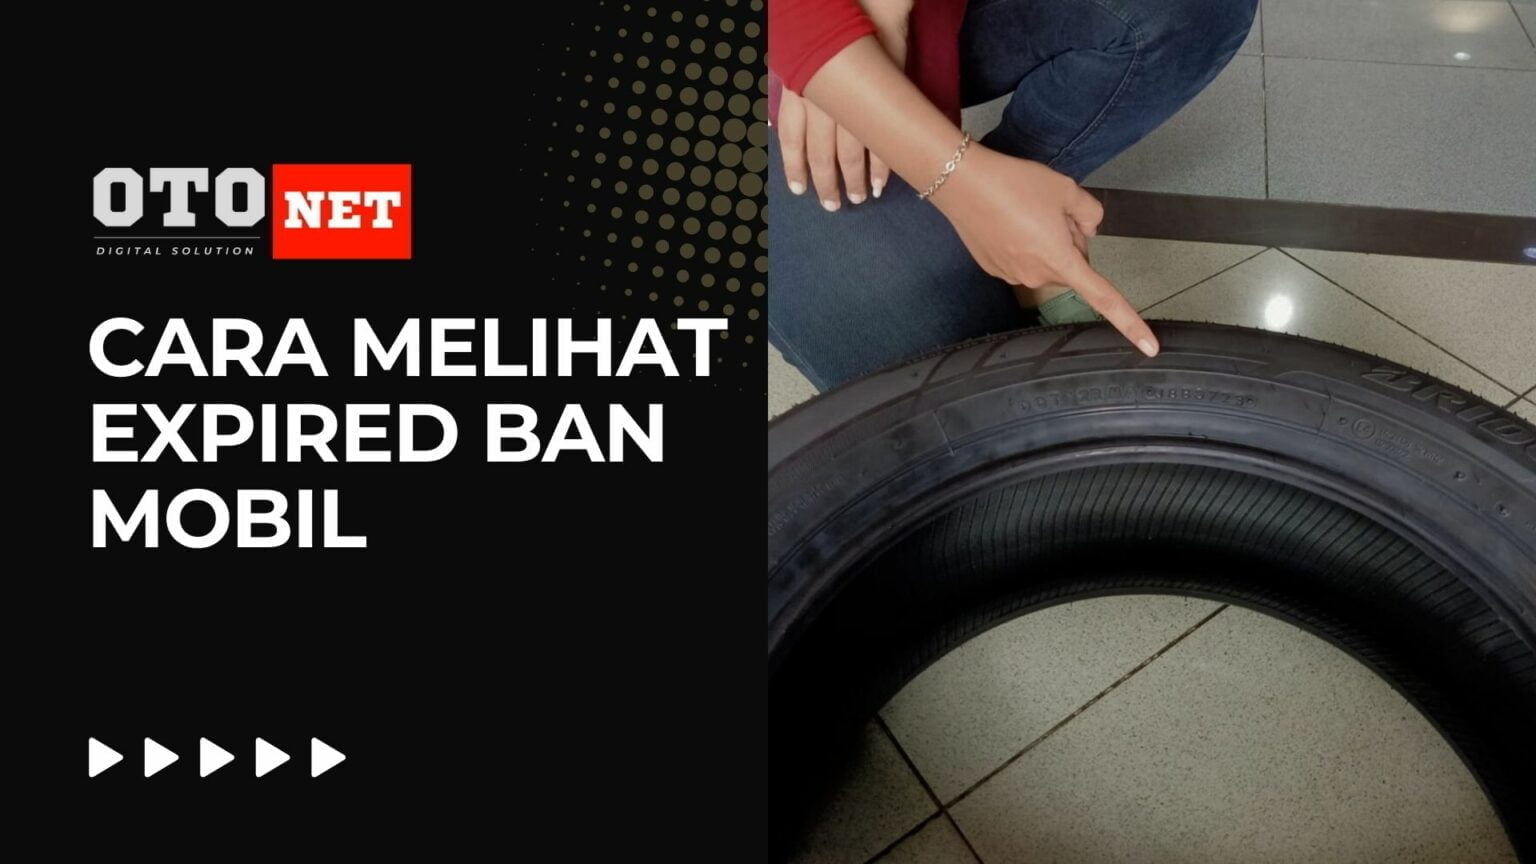 Cara Melihat Expired Ban Mobil